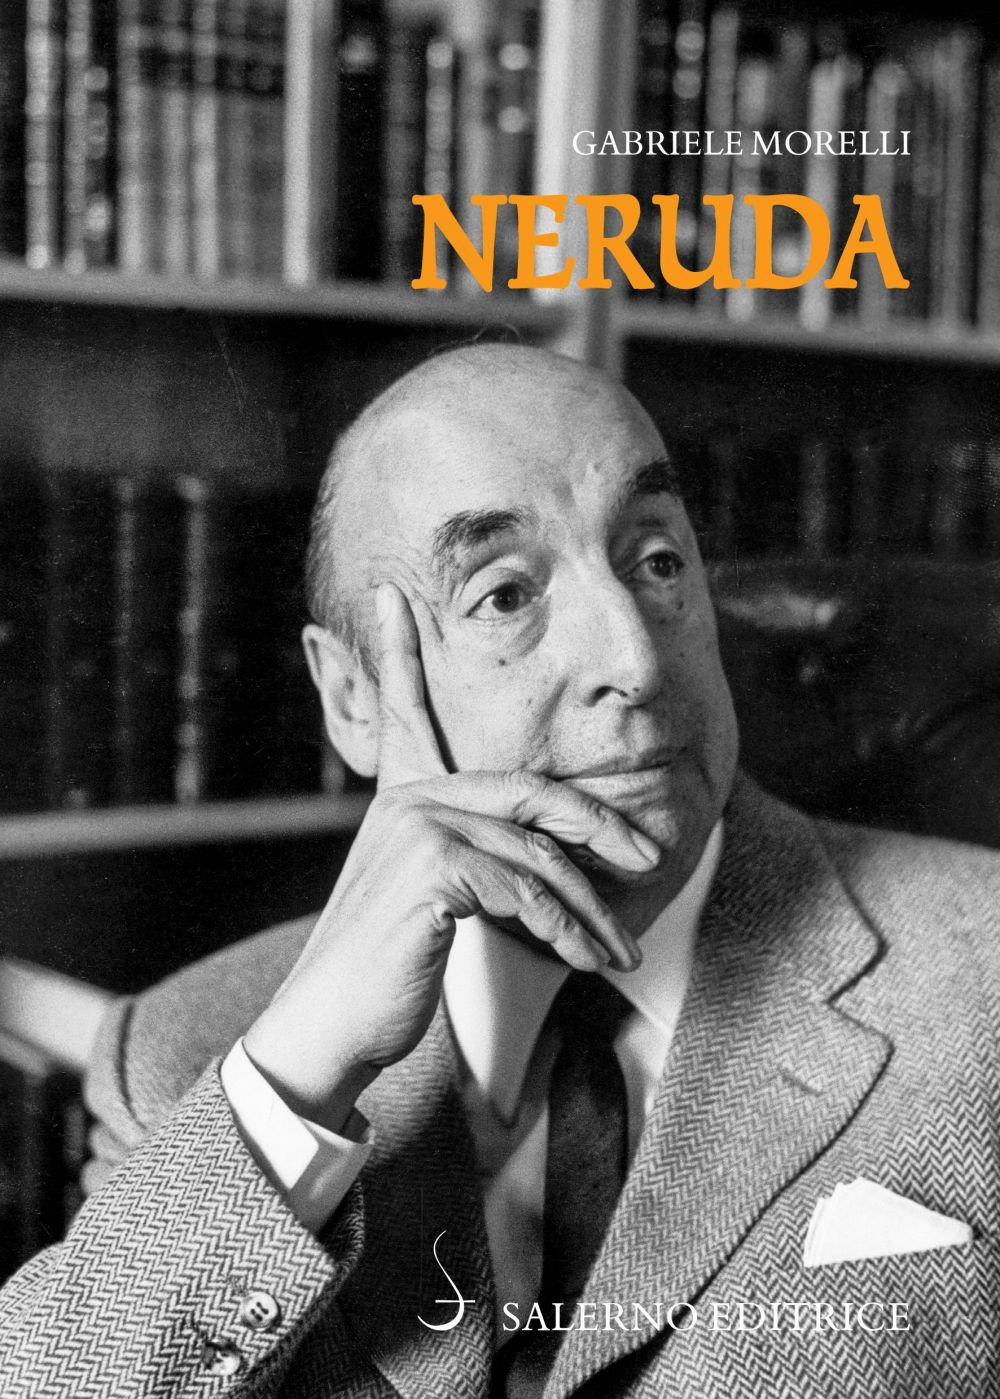 Libri Gabriele Morelli - Neruda NUOVO SIGILLATO, EDIZIONE DEL 16/05/2019 SUBITO DISPONIBILE